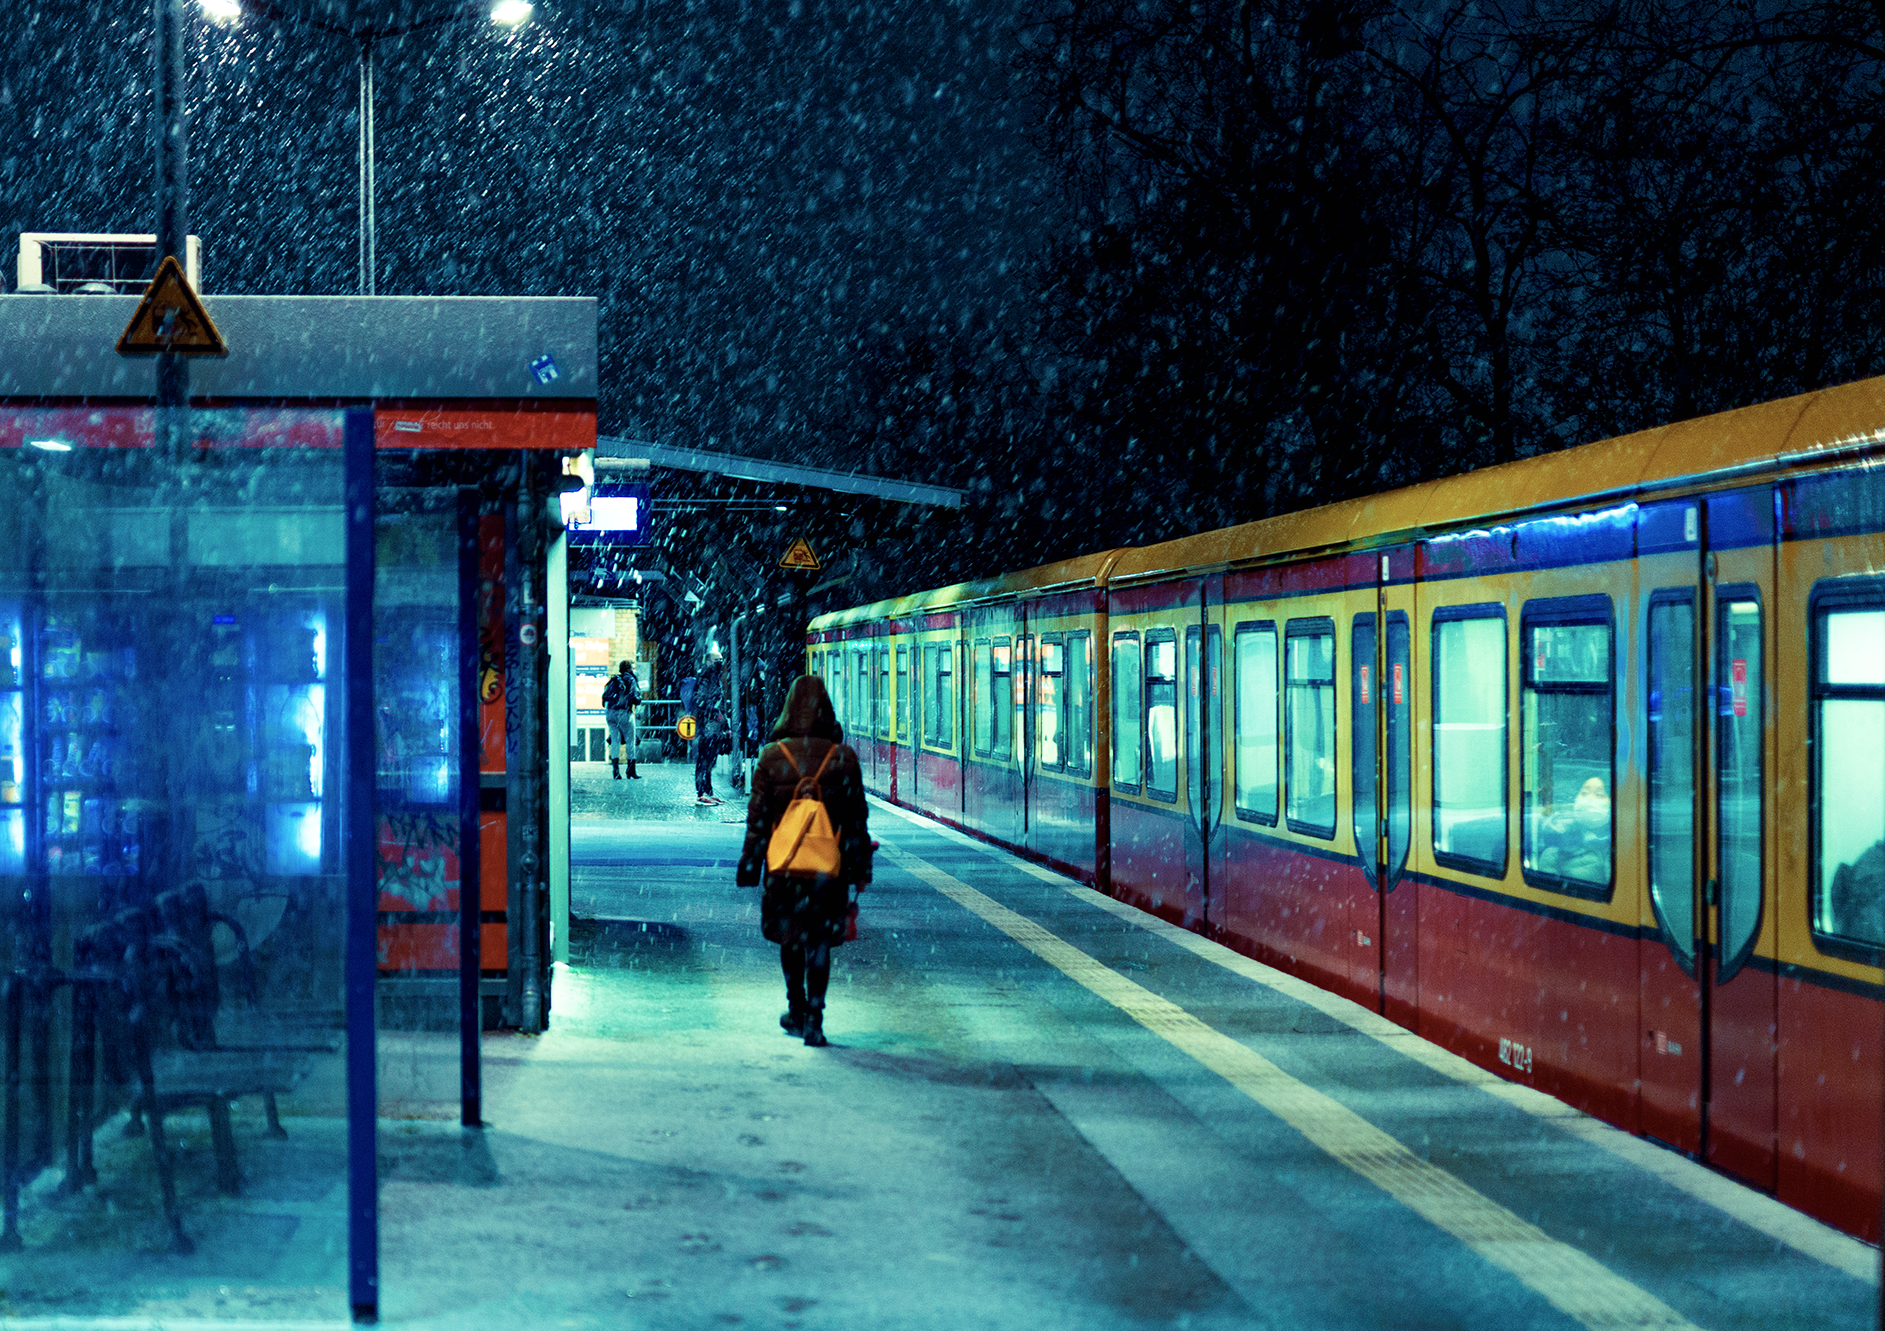 Snowy S Bahn train Station in Berlin, 2021